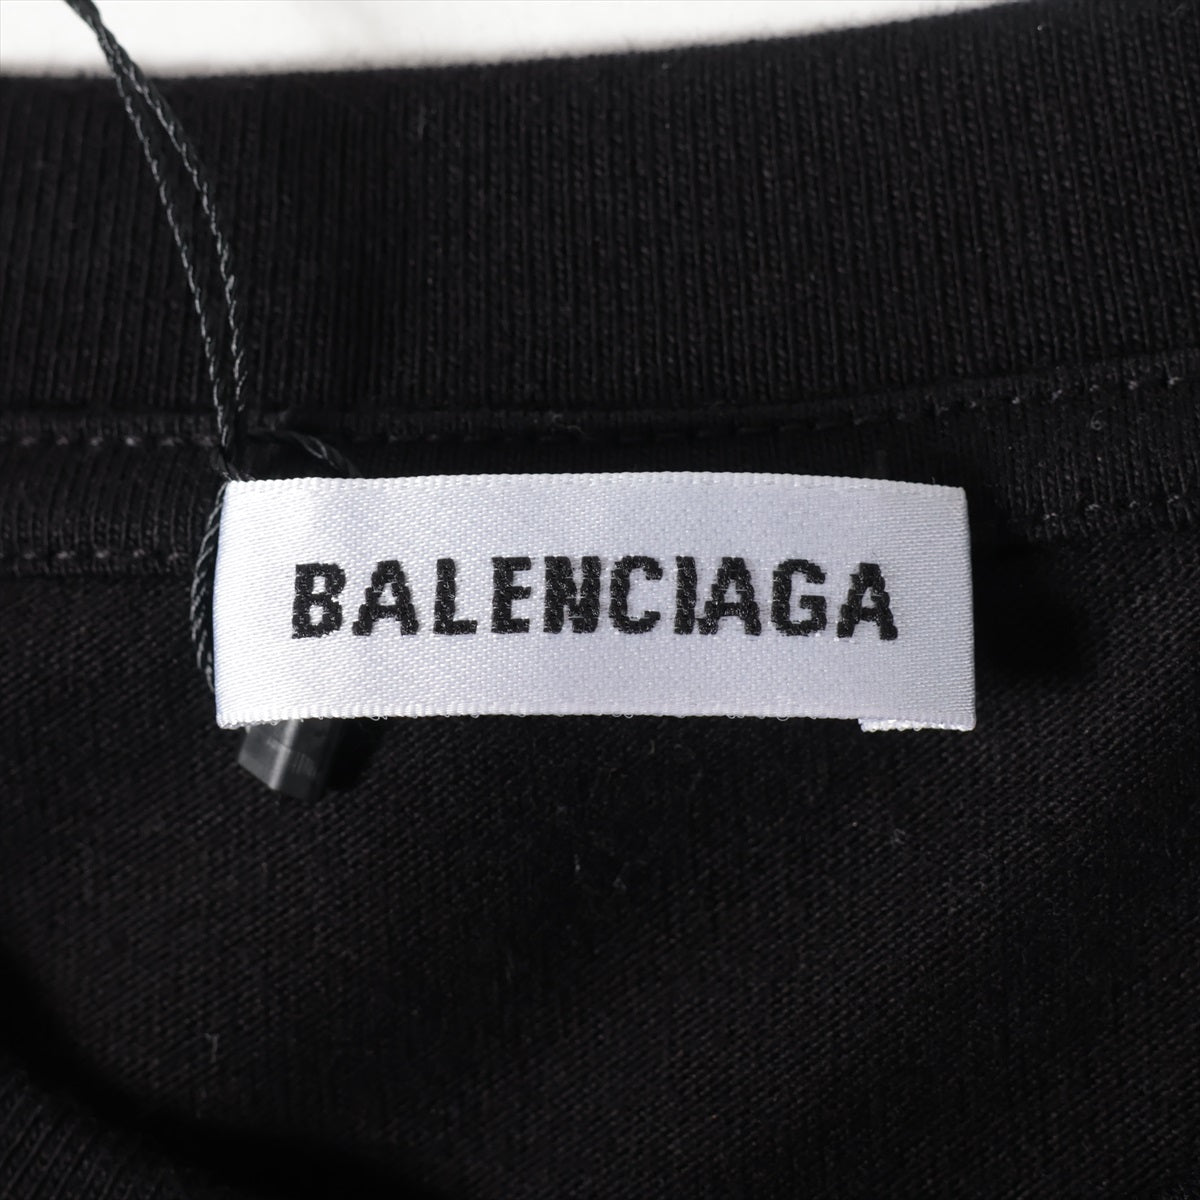 バレンシアガ 20年 コットン Tシャツ S レディース ブラック  612964 キャンペーンロゴ